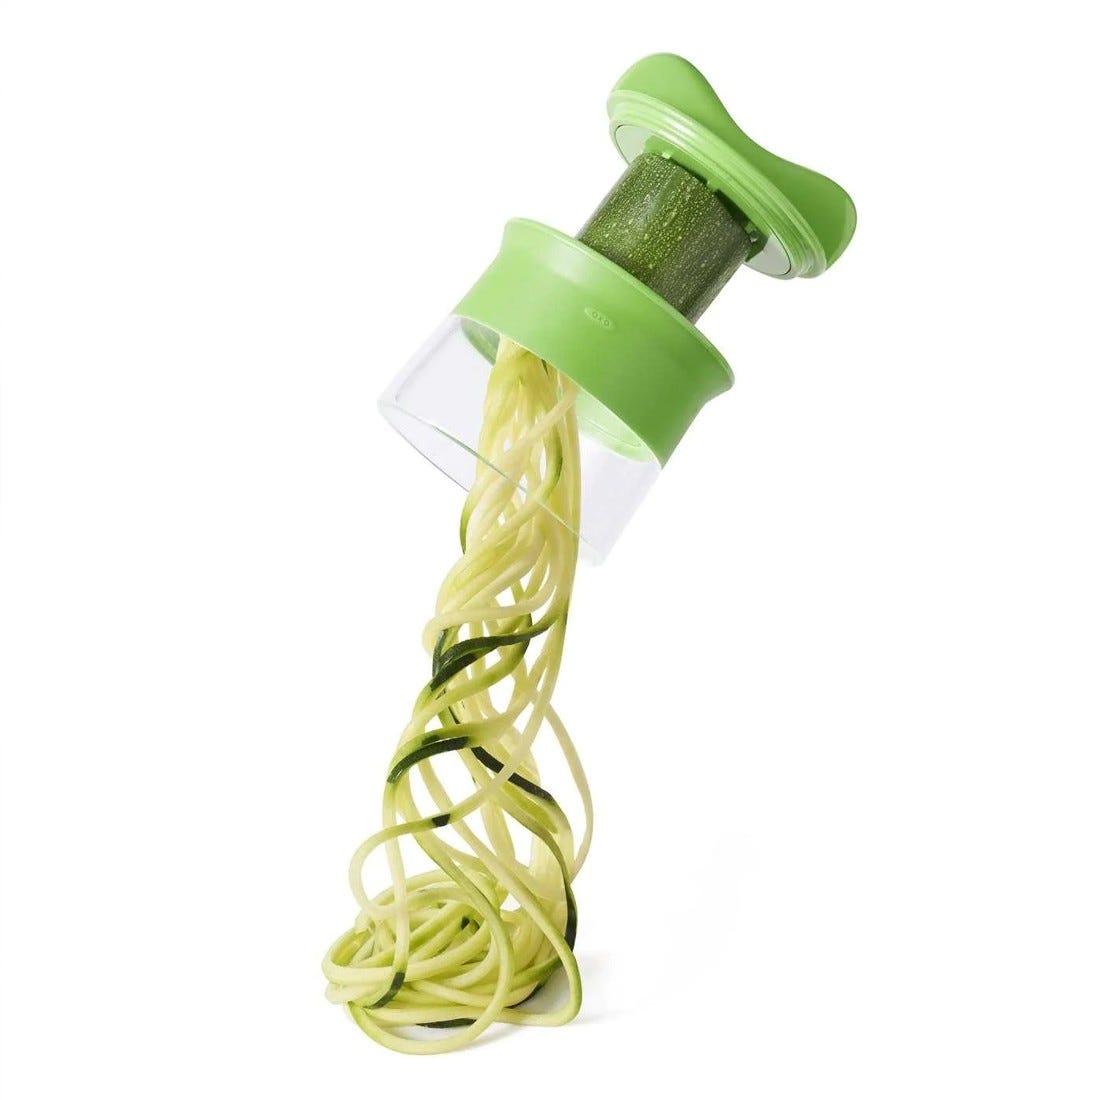 Cortador de Verduras Espiralizador: Crea Espaguetis de Calabacín y Más, Oferta exclusiva